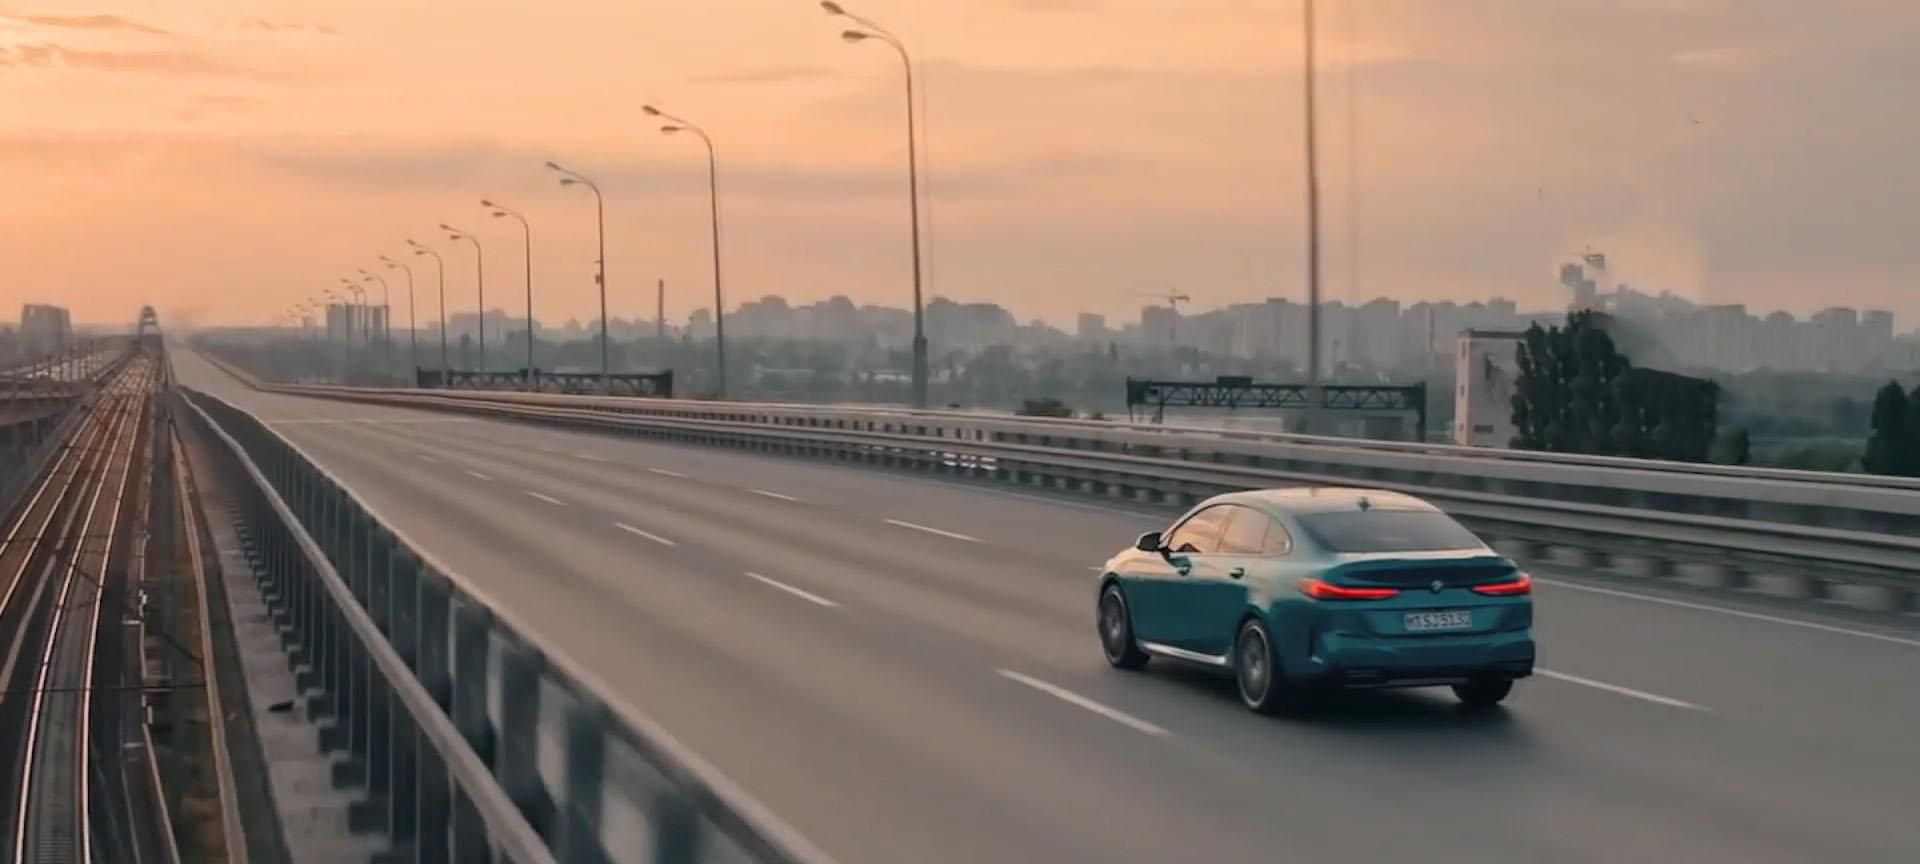 Нова модель BMW у Києві: вражаючий рекламний ролик